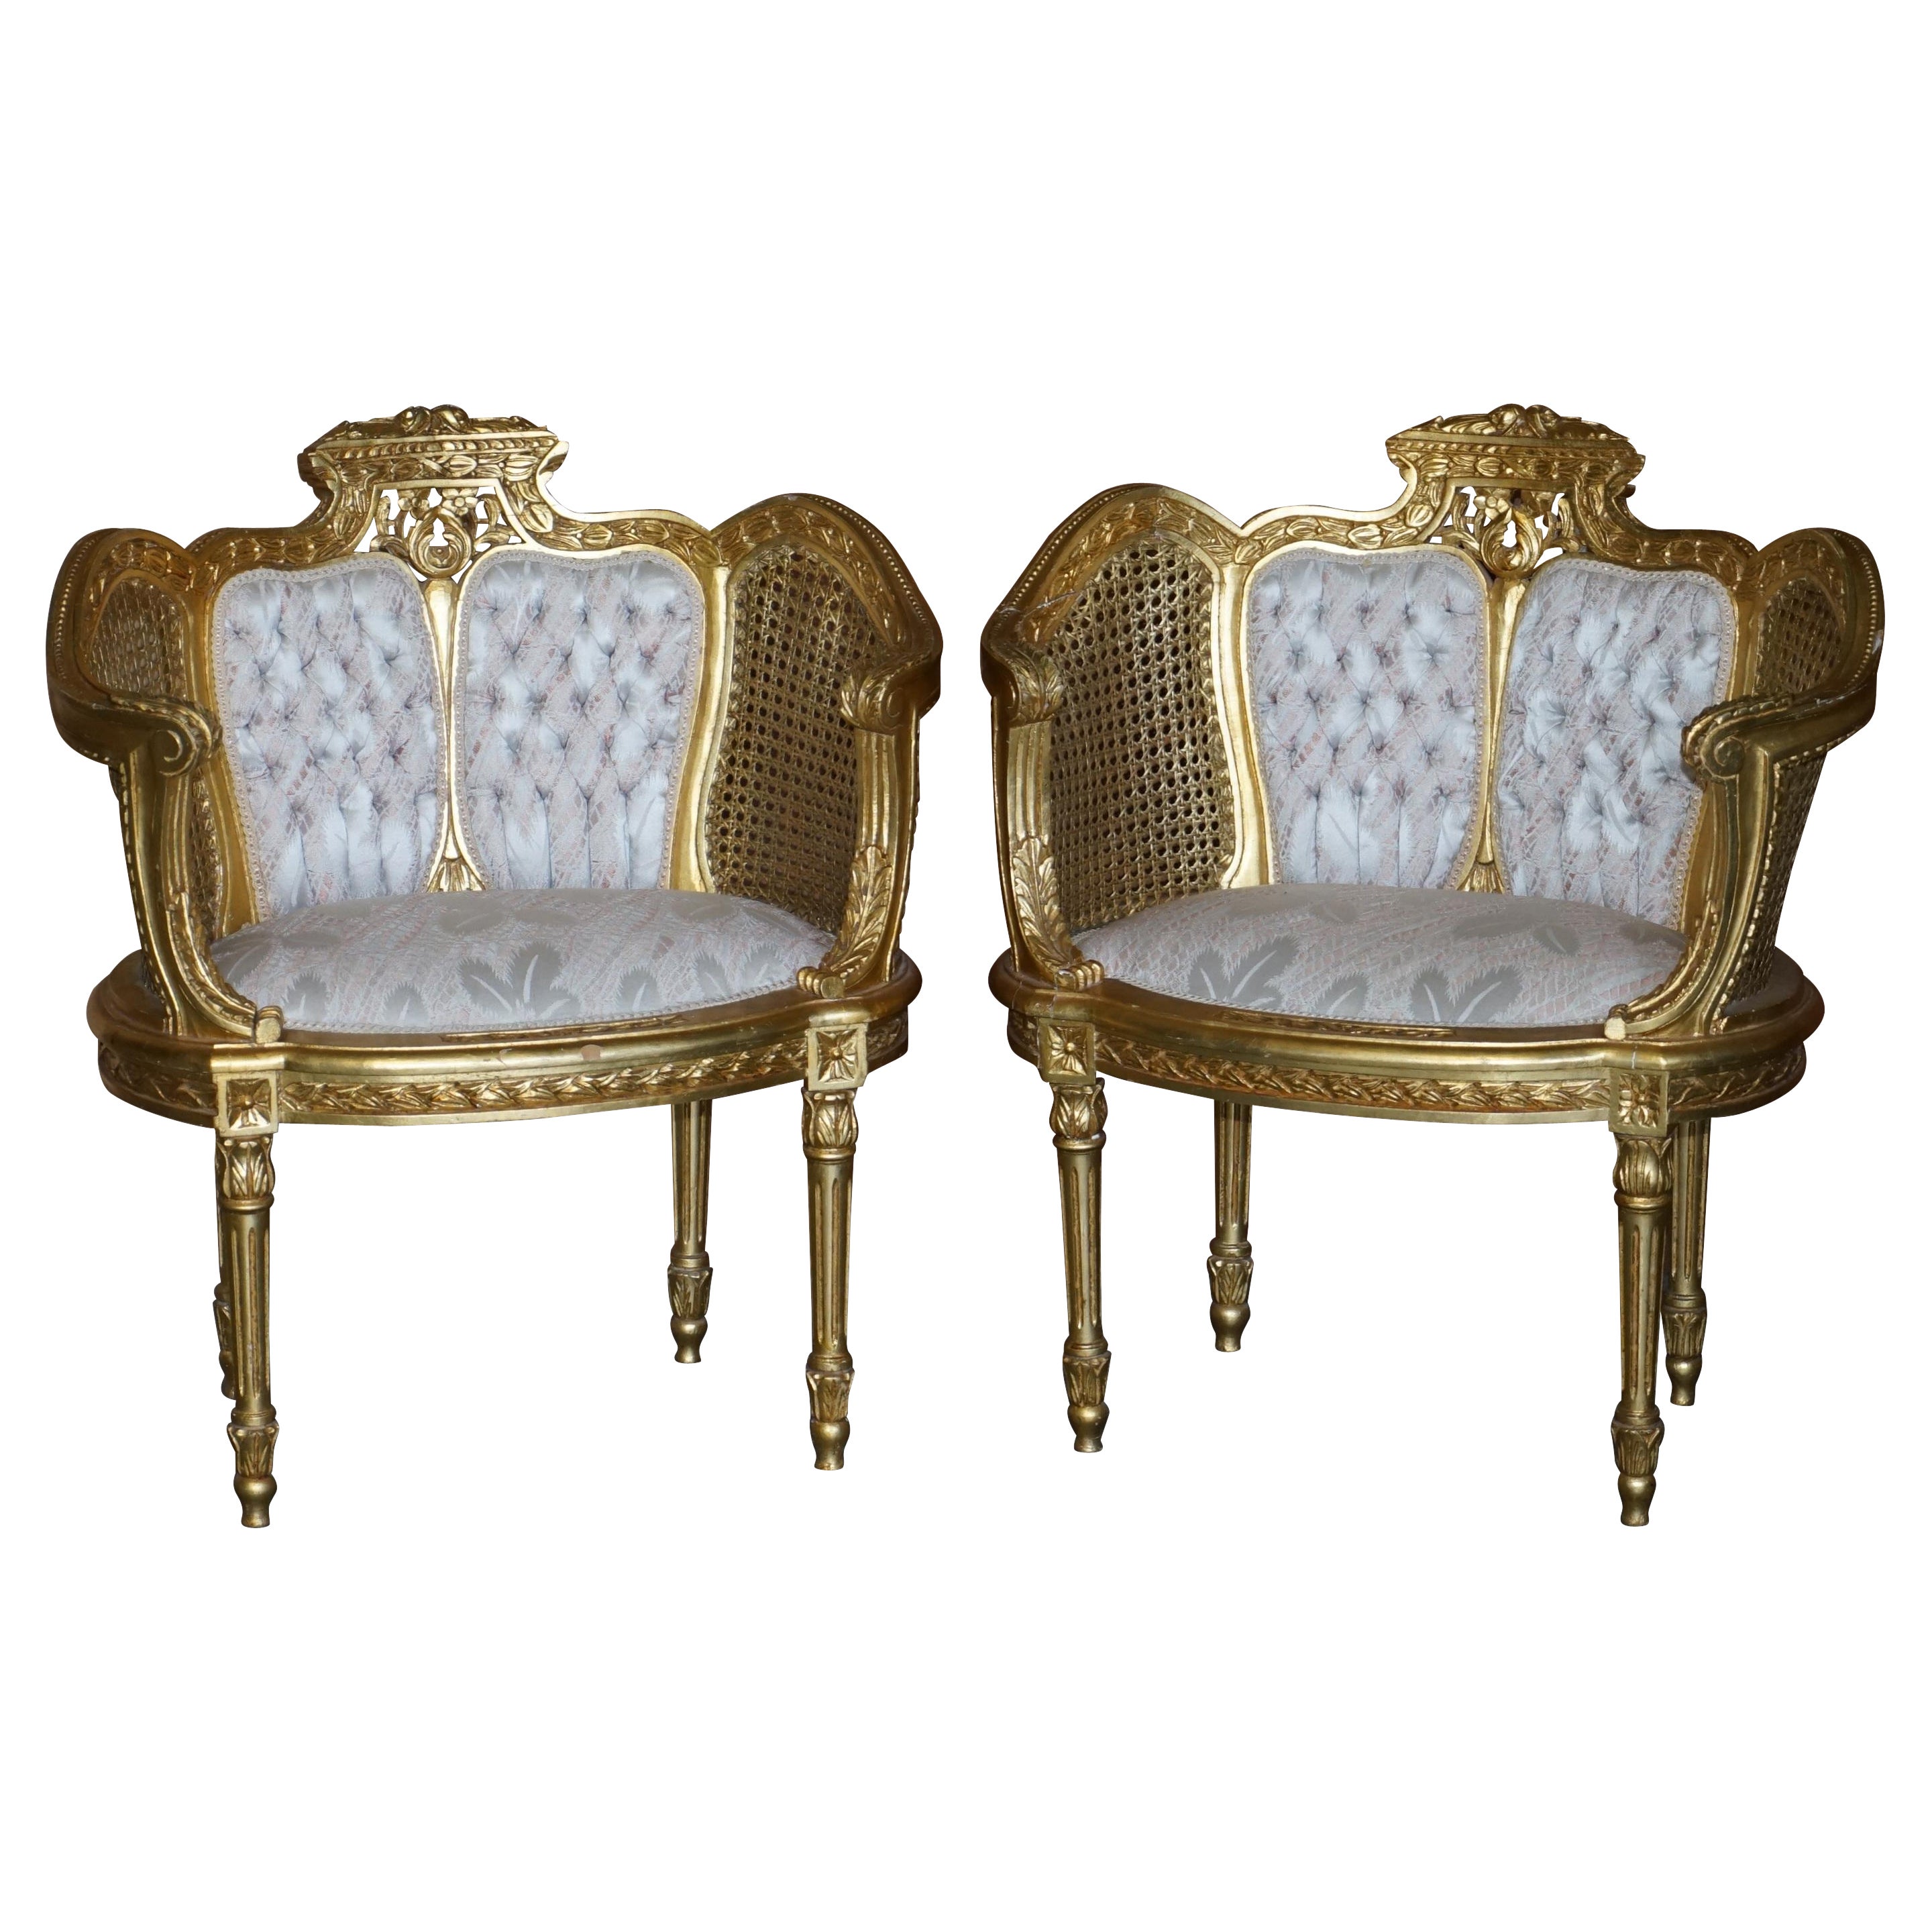 Paire de fauteuils bergères anciens Louis III Napoléon III en bois doré et or, datant d'environ 1870